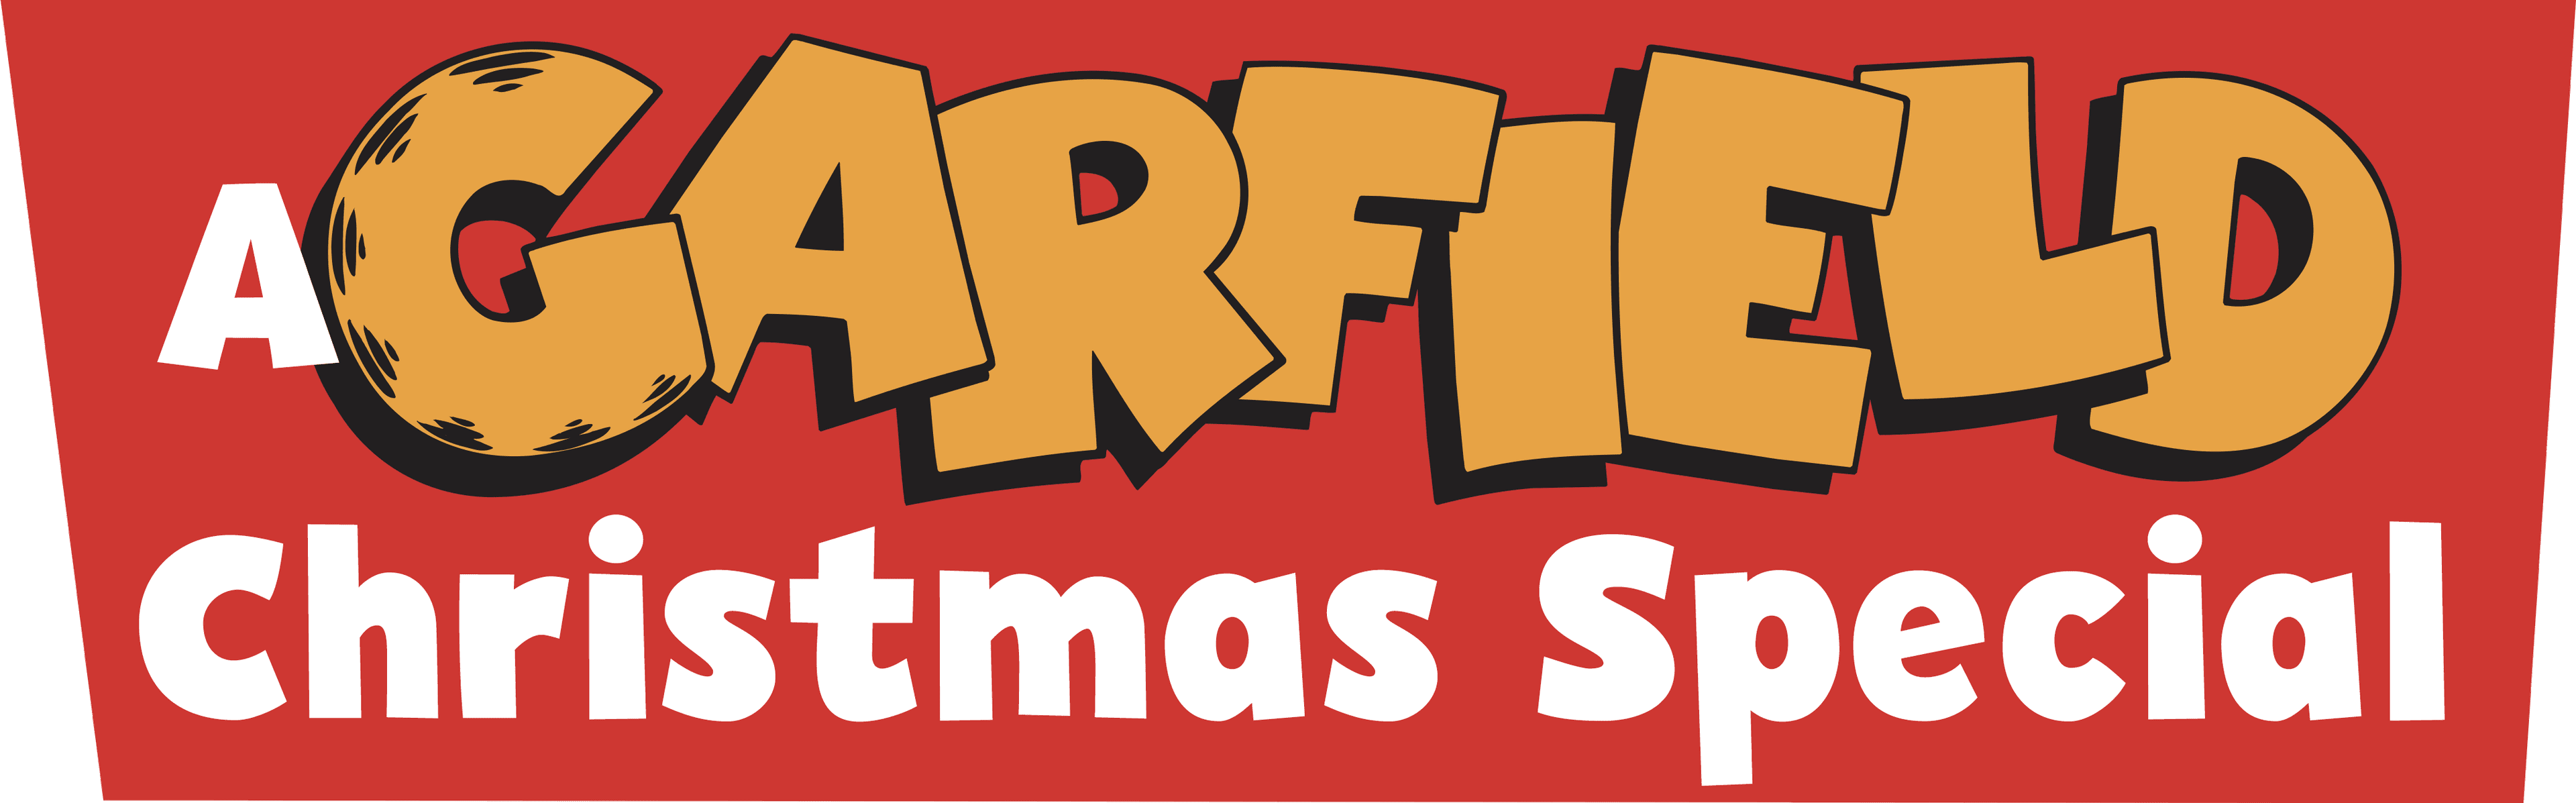 A Garfield Christmas Special logo